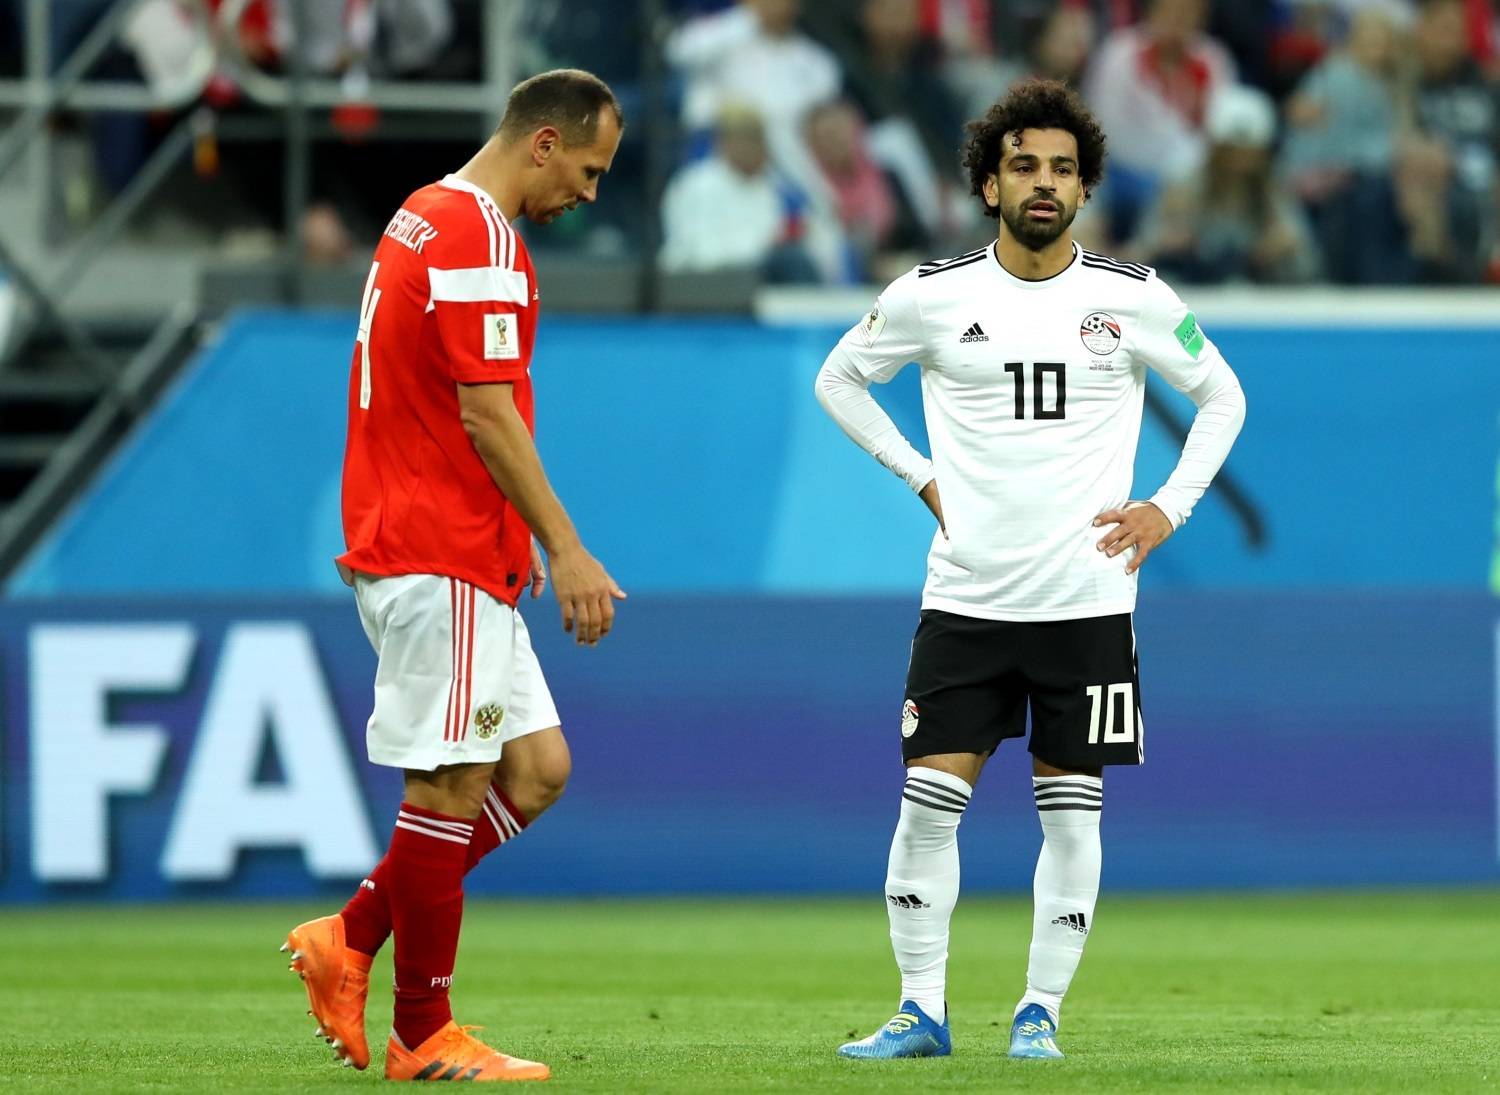 Estrela De Futebol Egípcia Mohamed Salah Antes Do Fósforo Do Campeonato Do  Mundo 2018 Imagem Editorial - Imagem de profissional, russo: 119526480